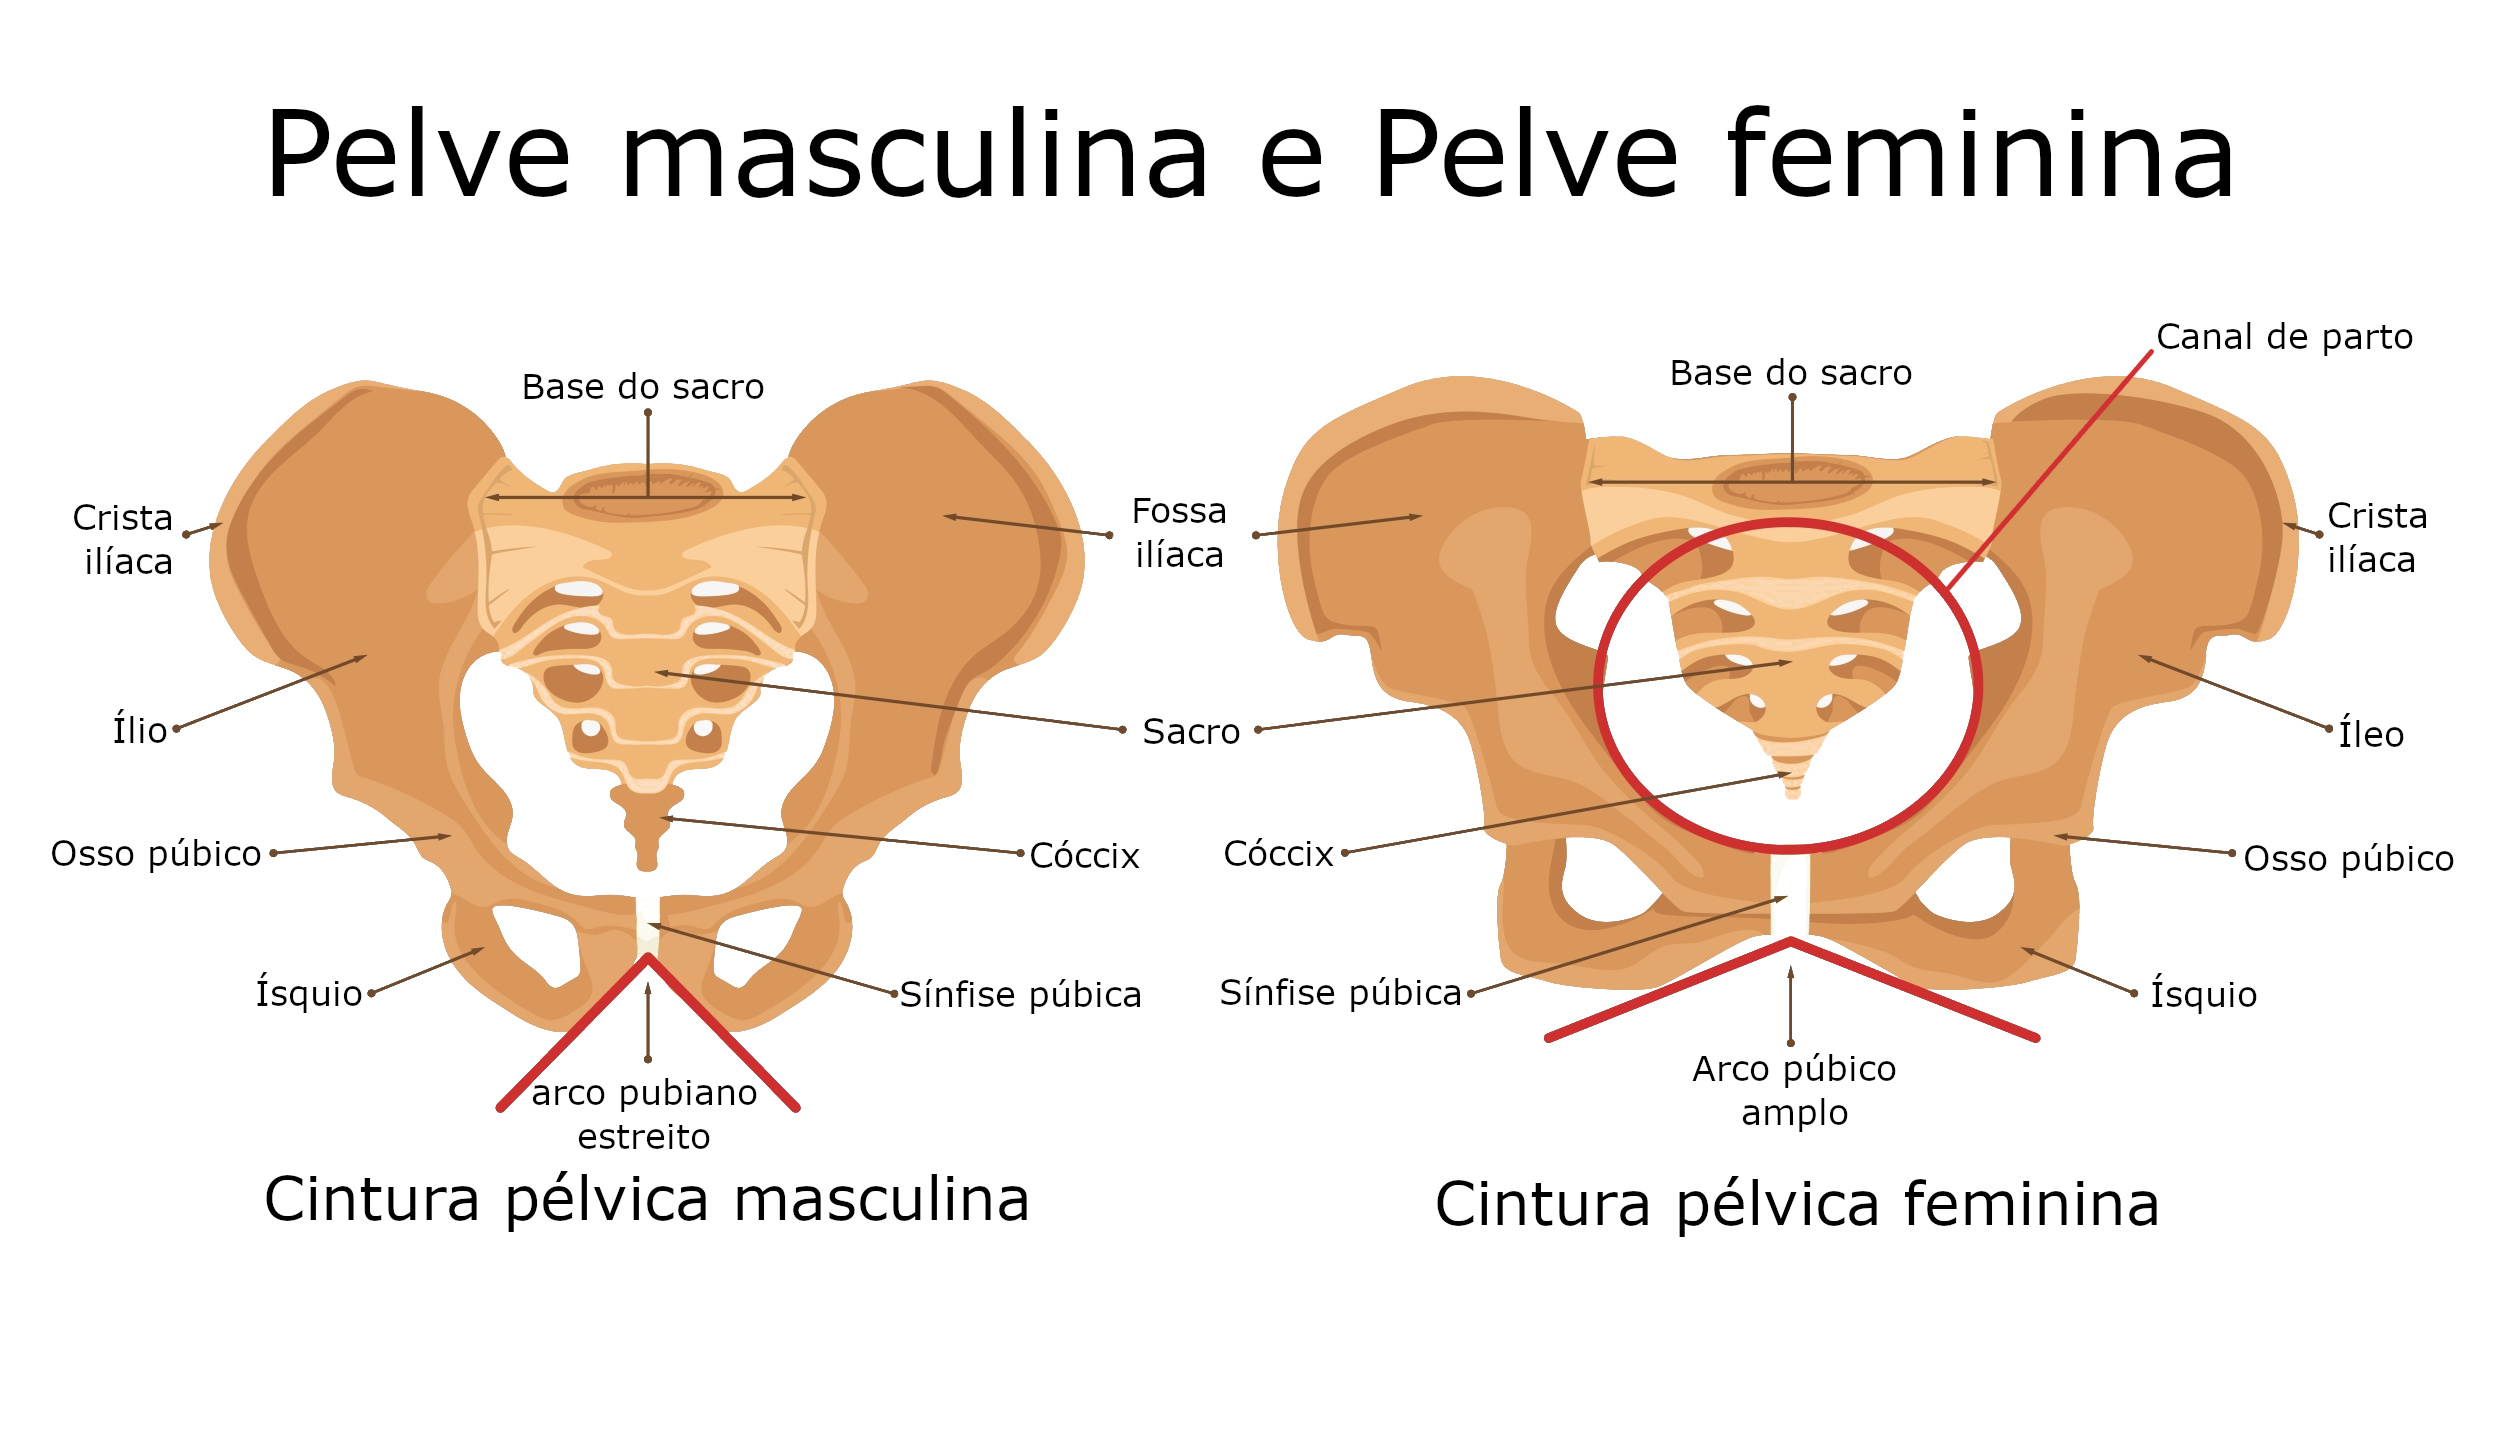 CINTURA PÉLVICA - Anatomia I